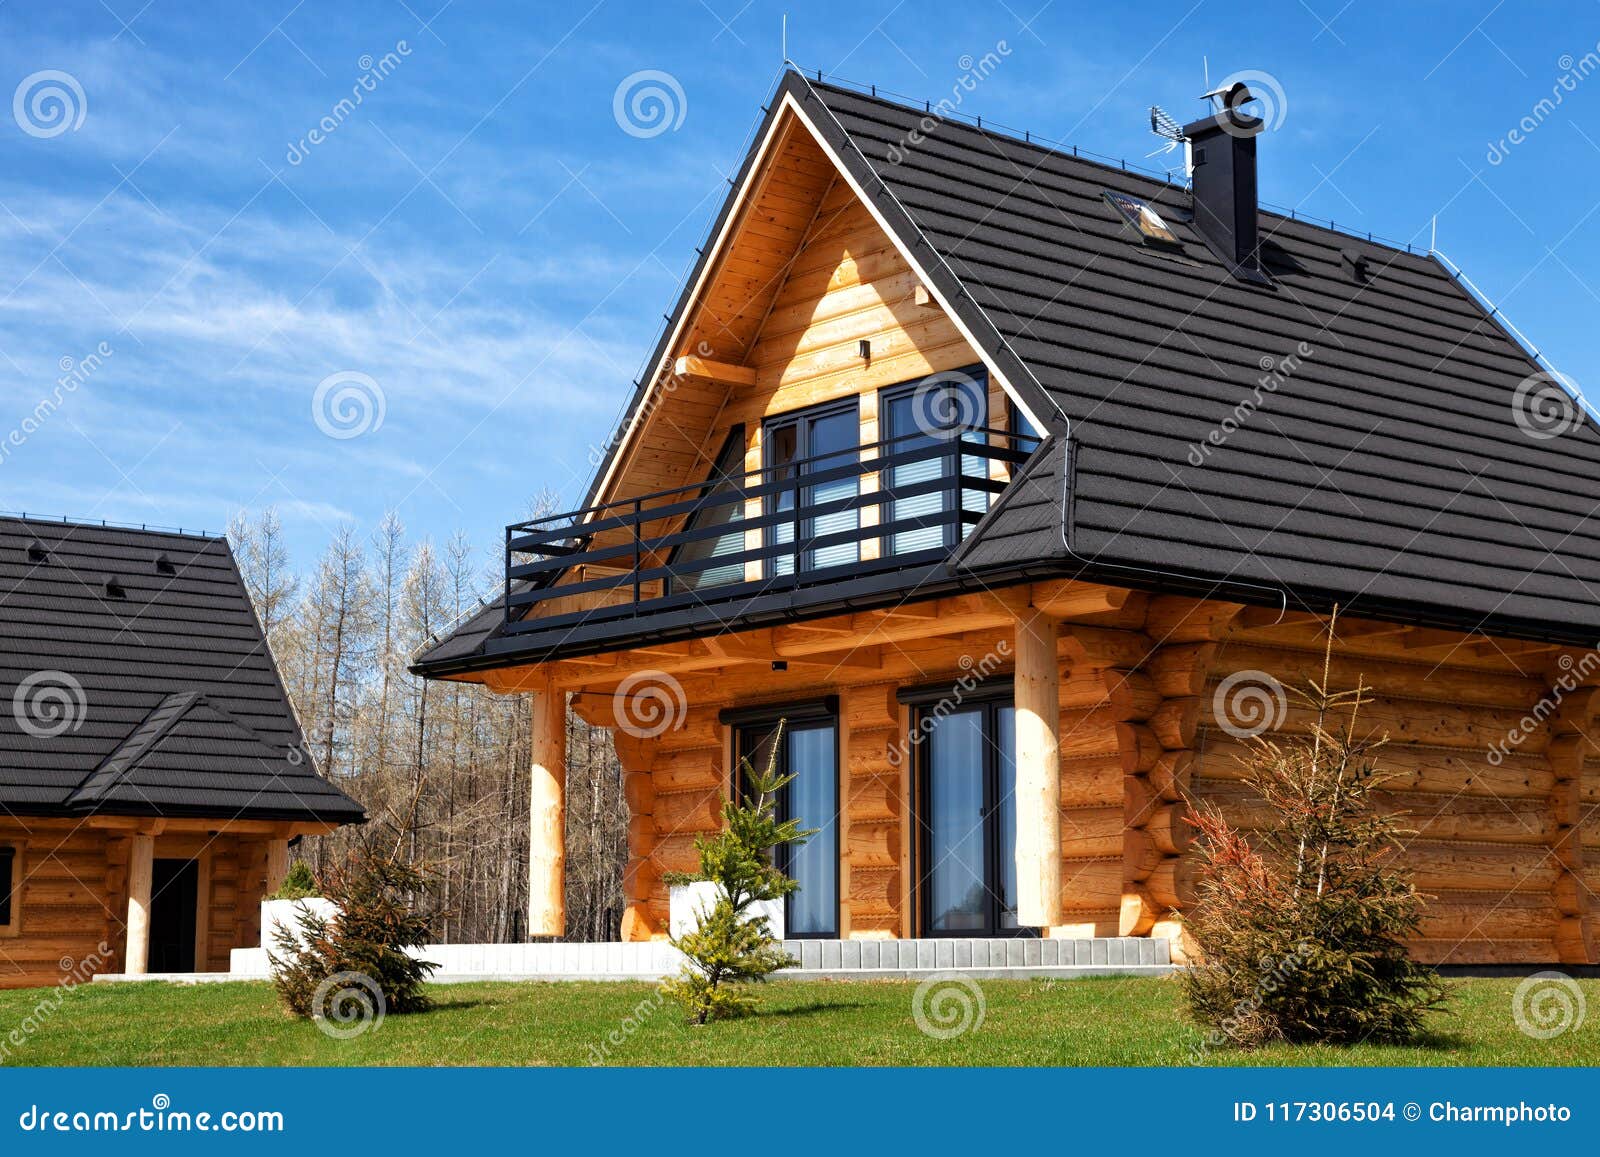 Fachadas de casas simples: Diseños funcionales y atractivos